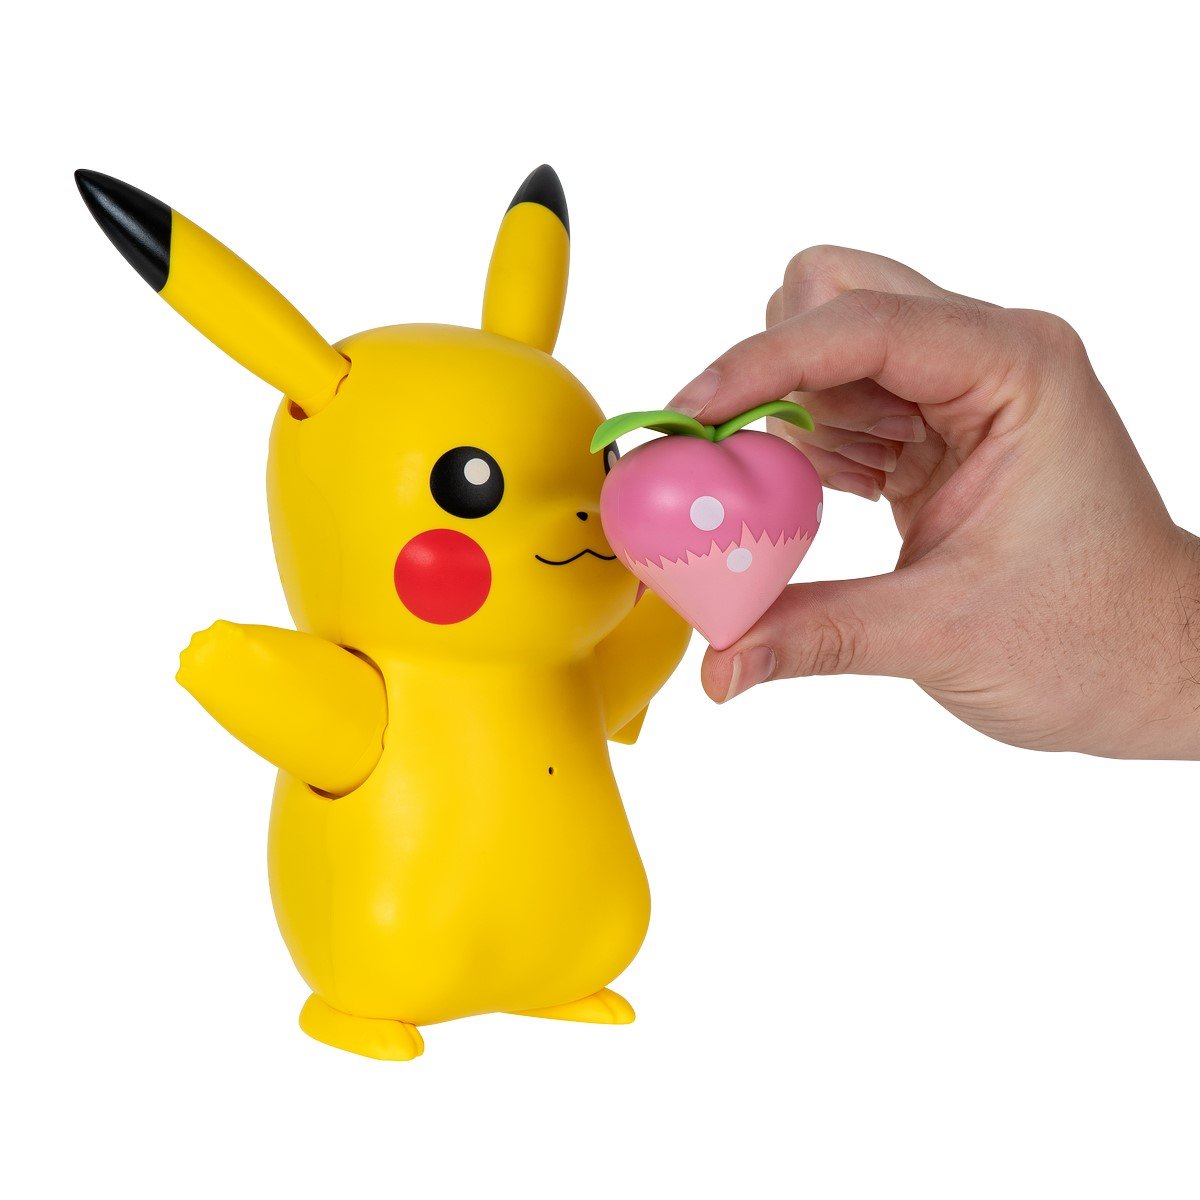 Pikachu interactif et accessoires - Pokémon